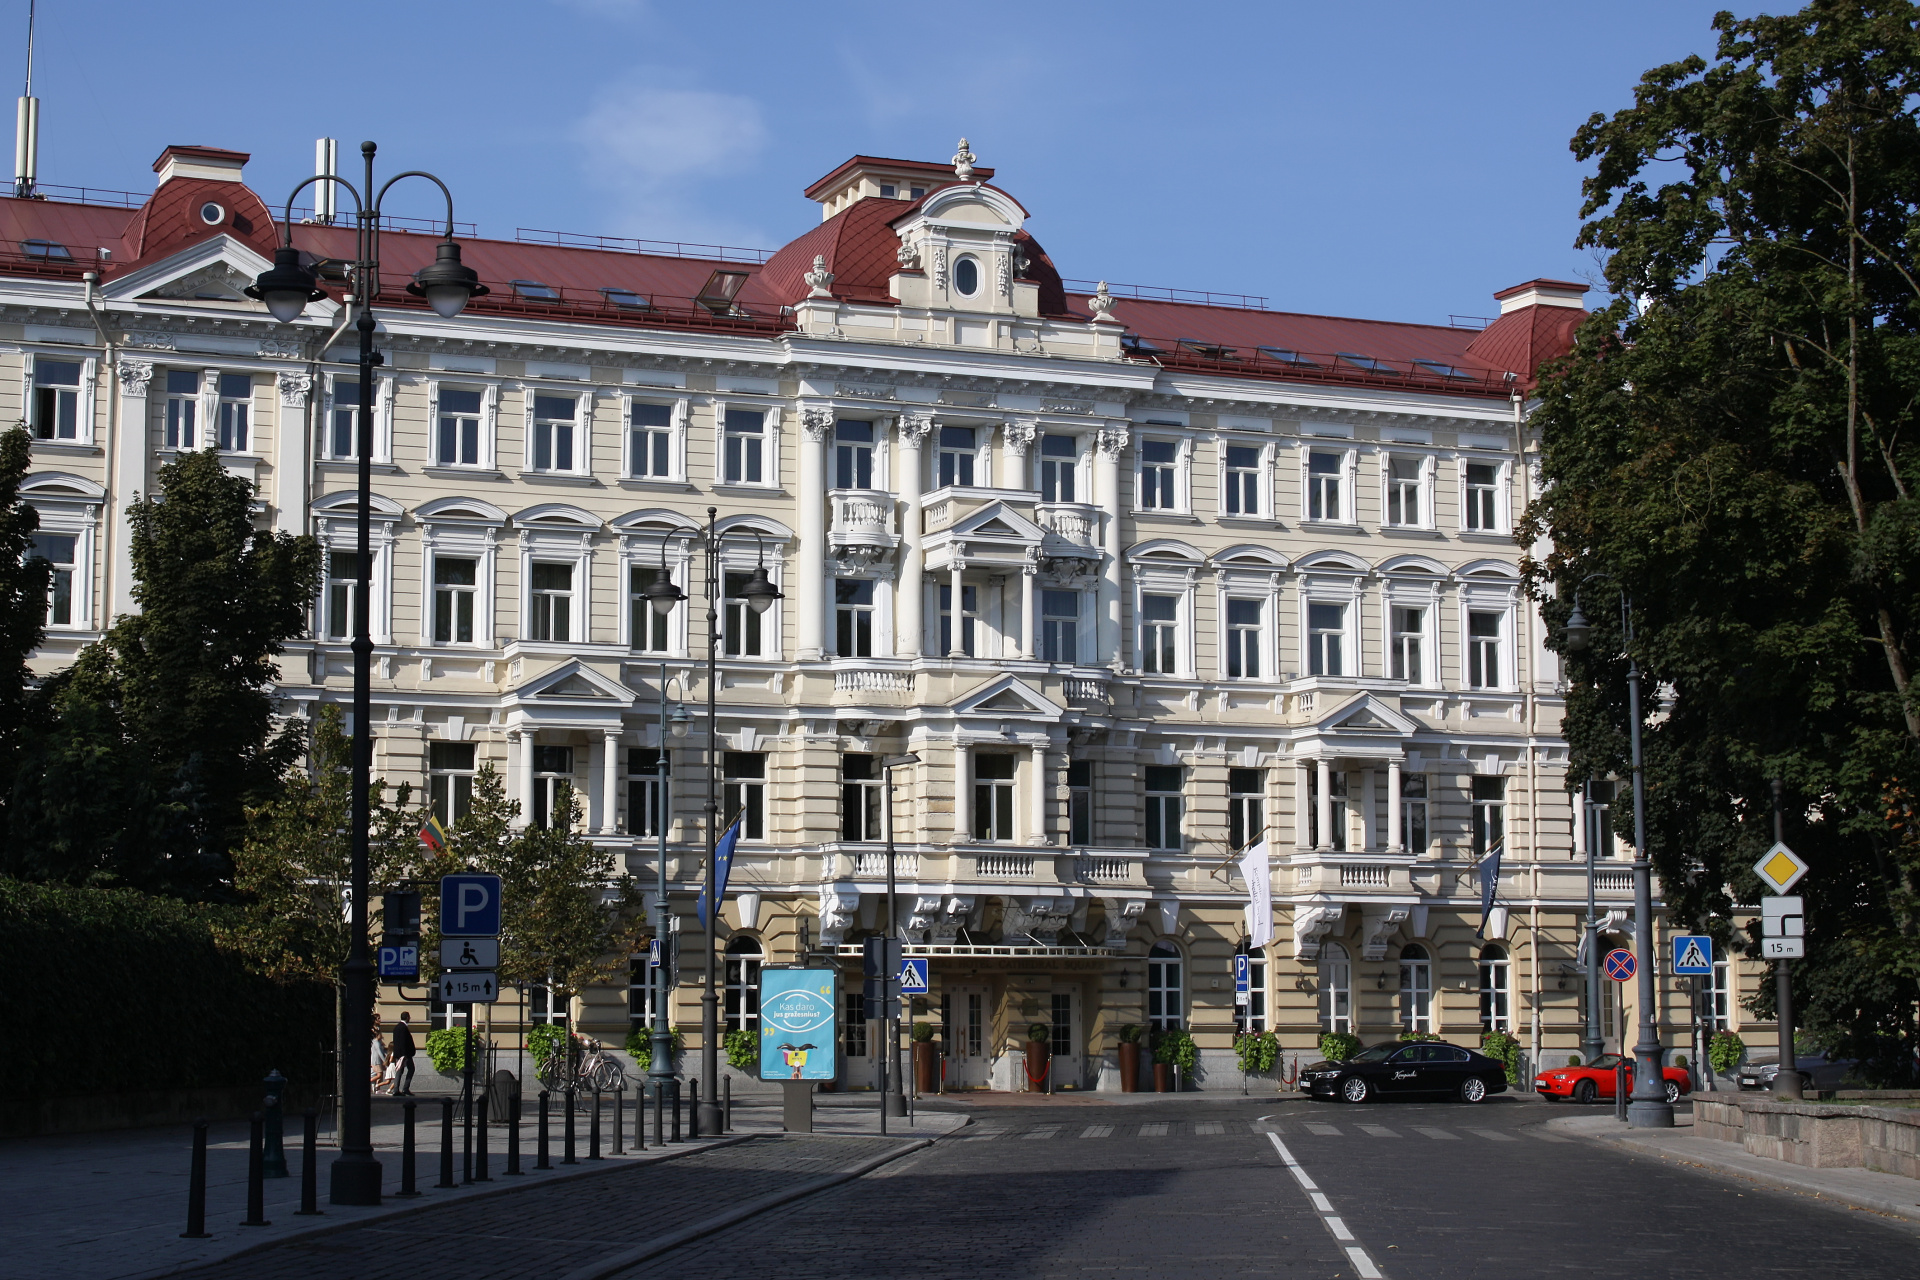 Kempinski Hotel (Podróże » Wilno)